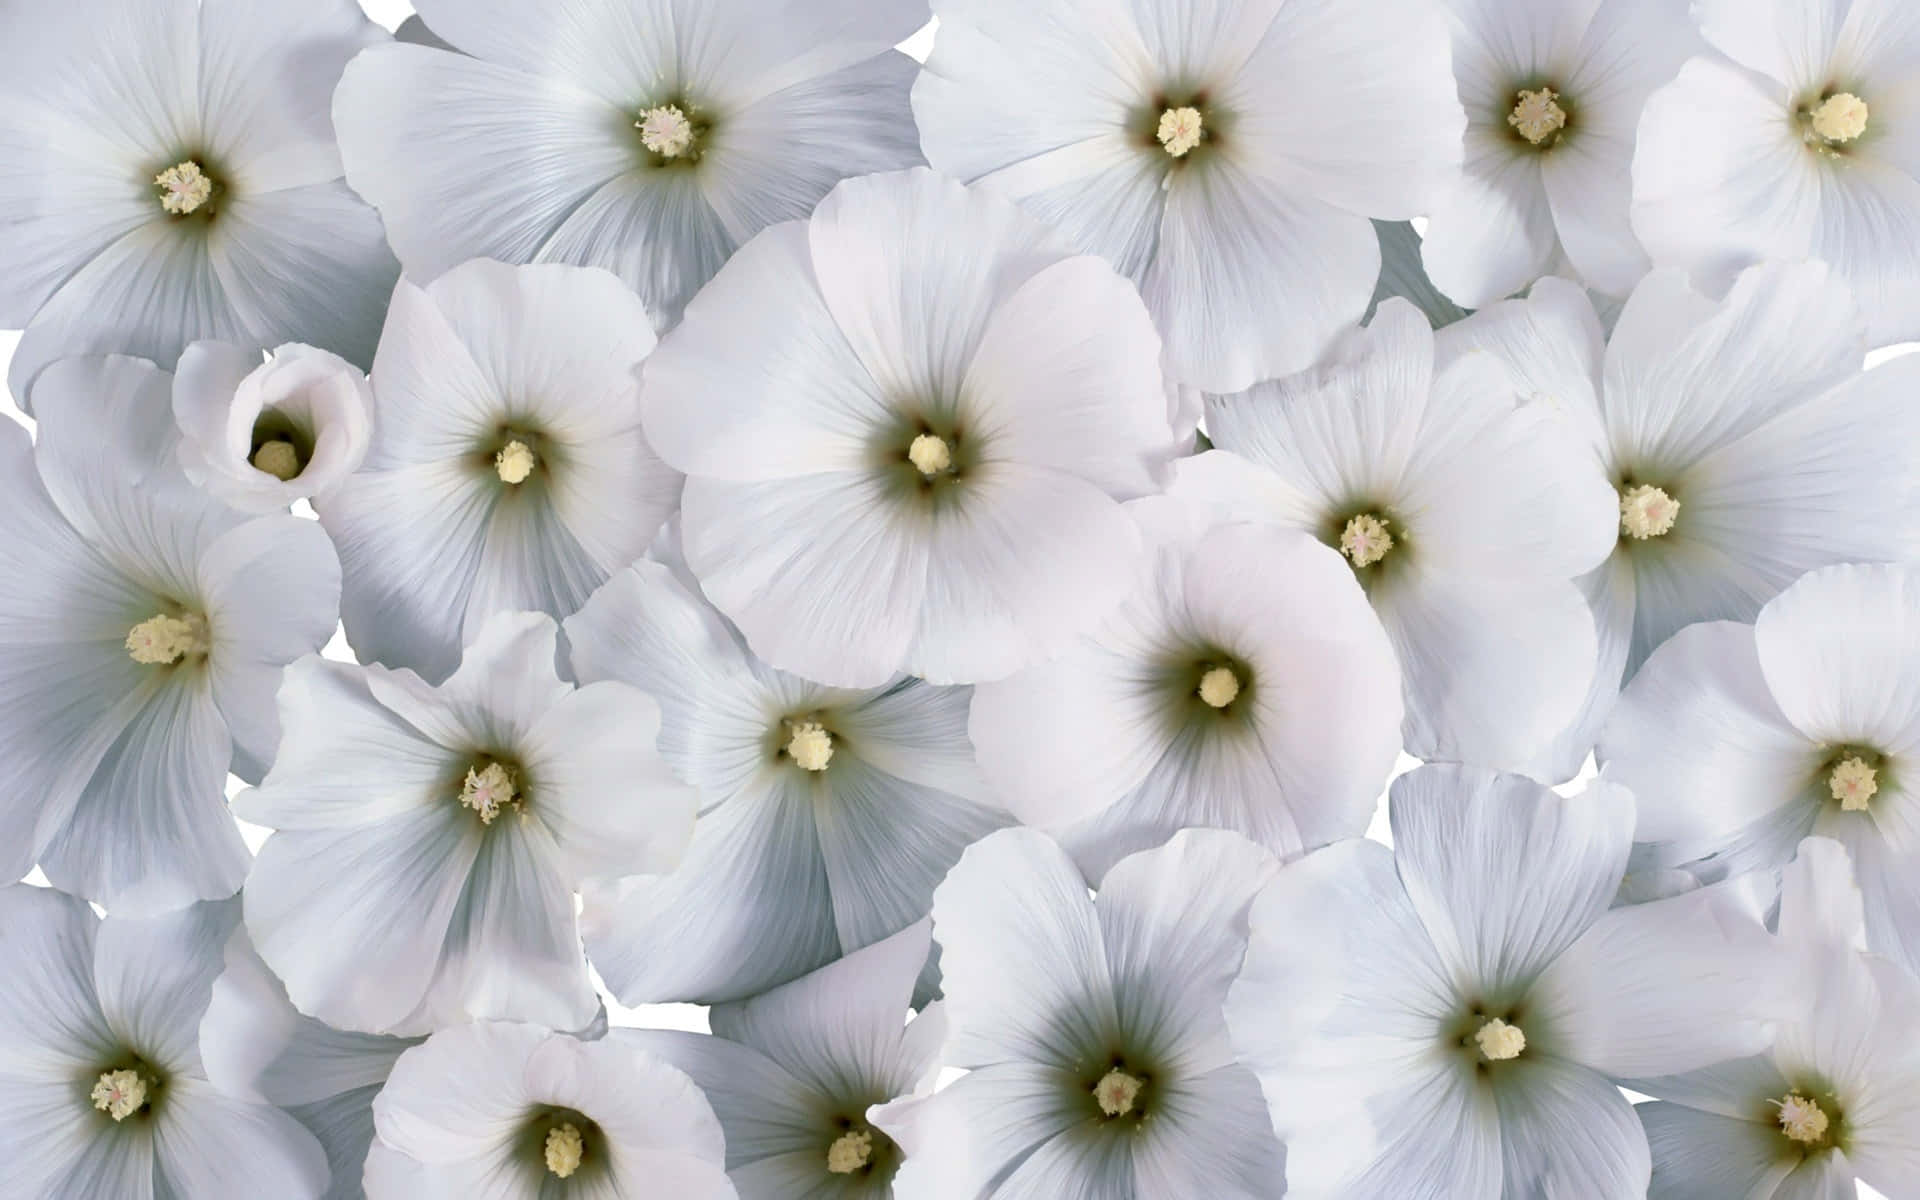 Einewunderschöne Weiße Blume Umgeben Von Gelben Blütenblättern An Einem Sonnigen Tag.